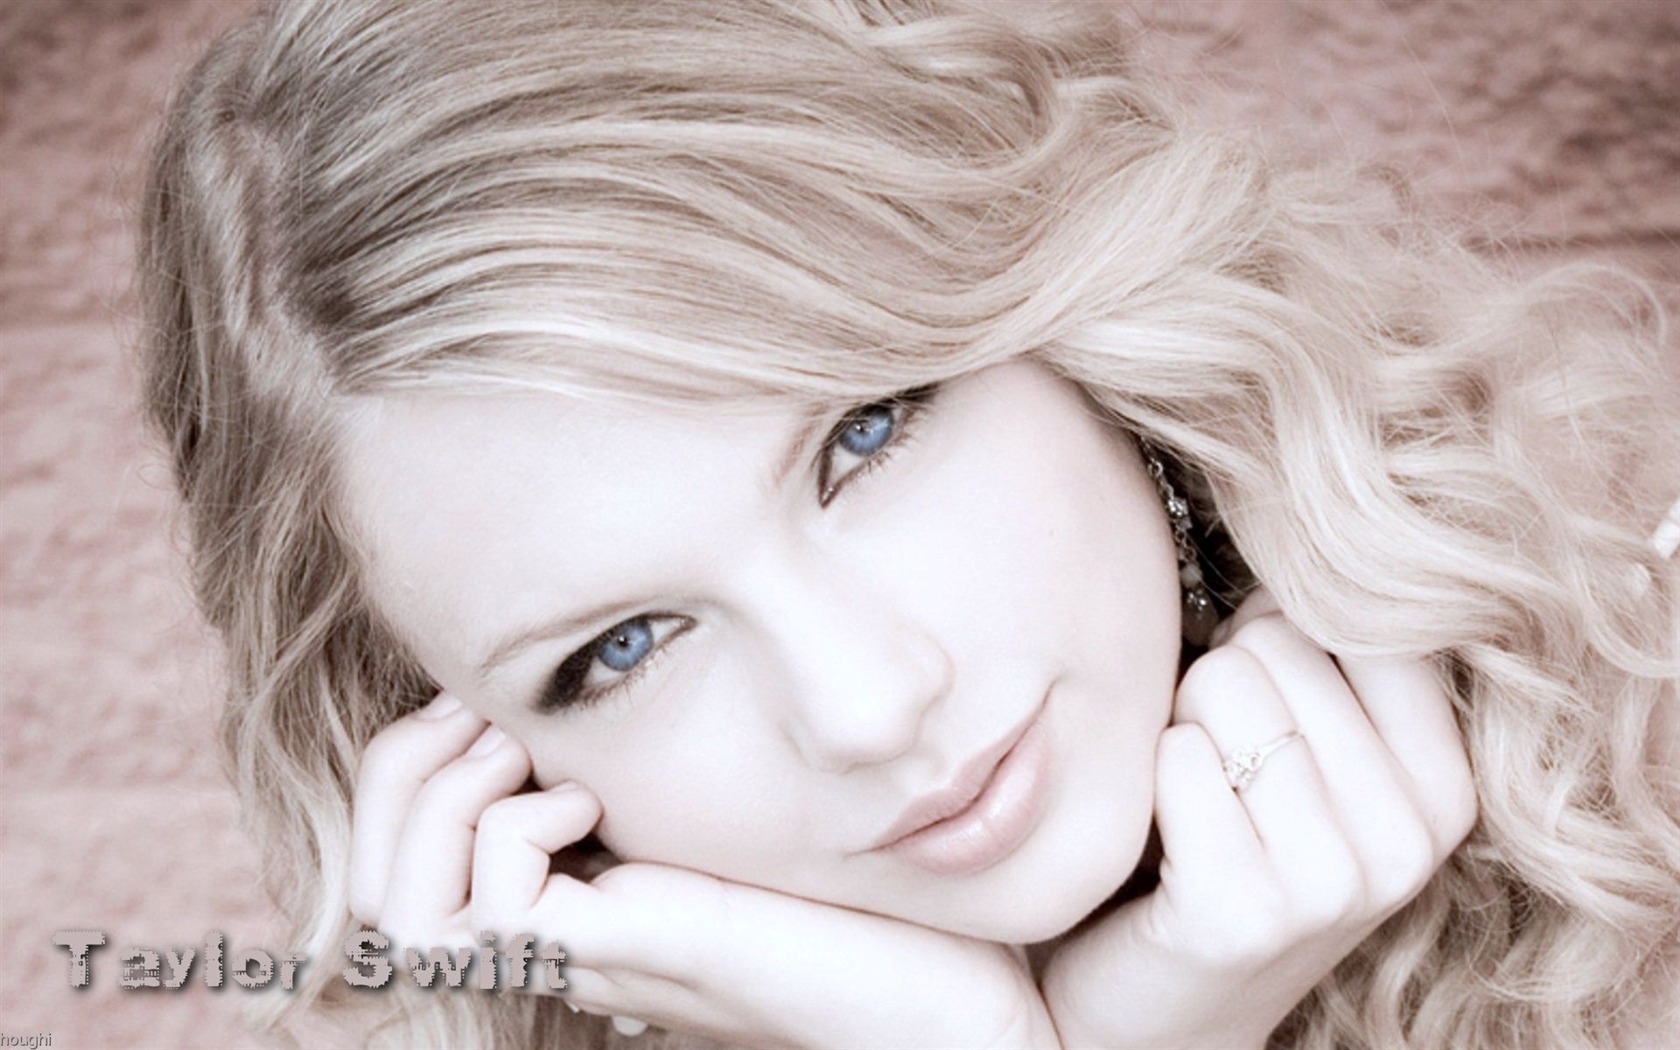 Taylor Swift beau fond d'écran #3 - 1680x1050